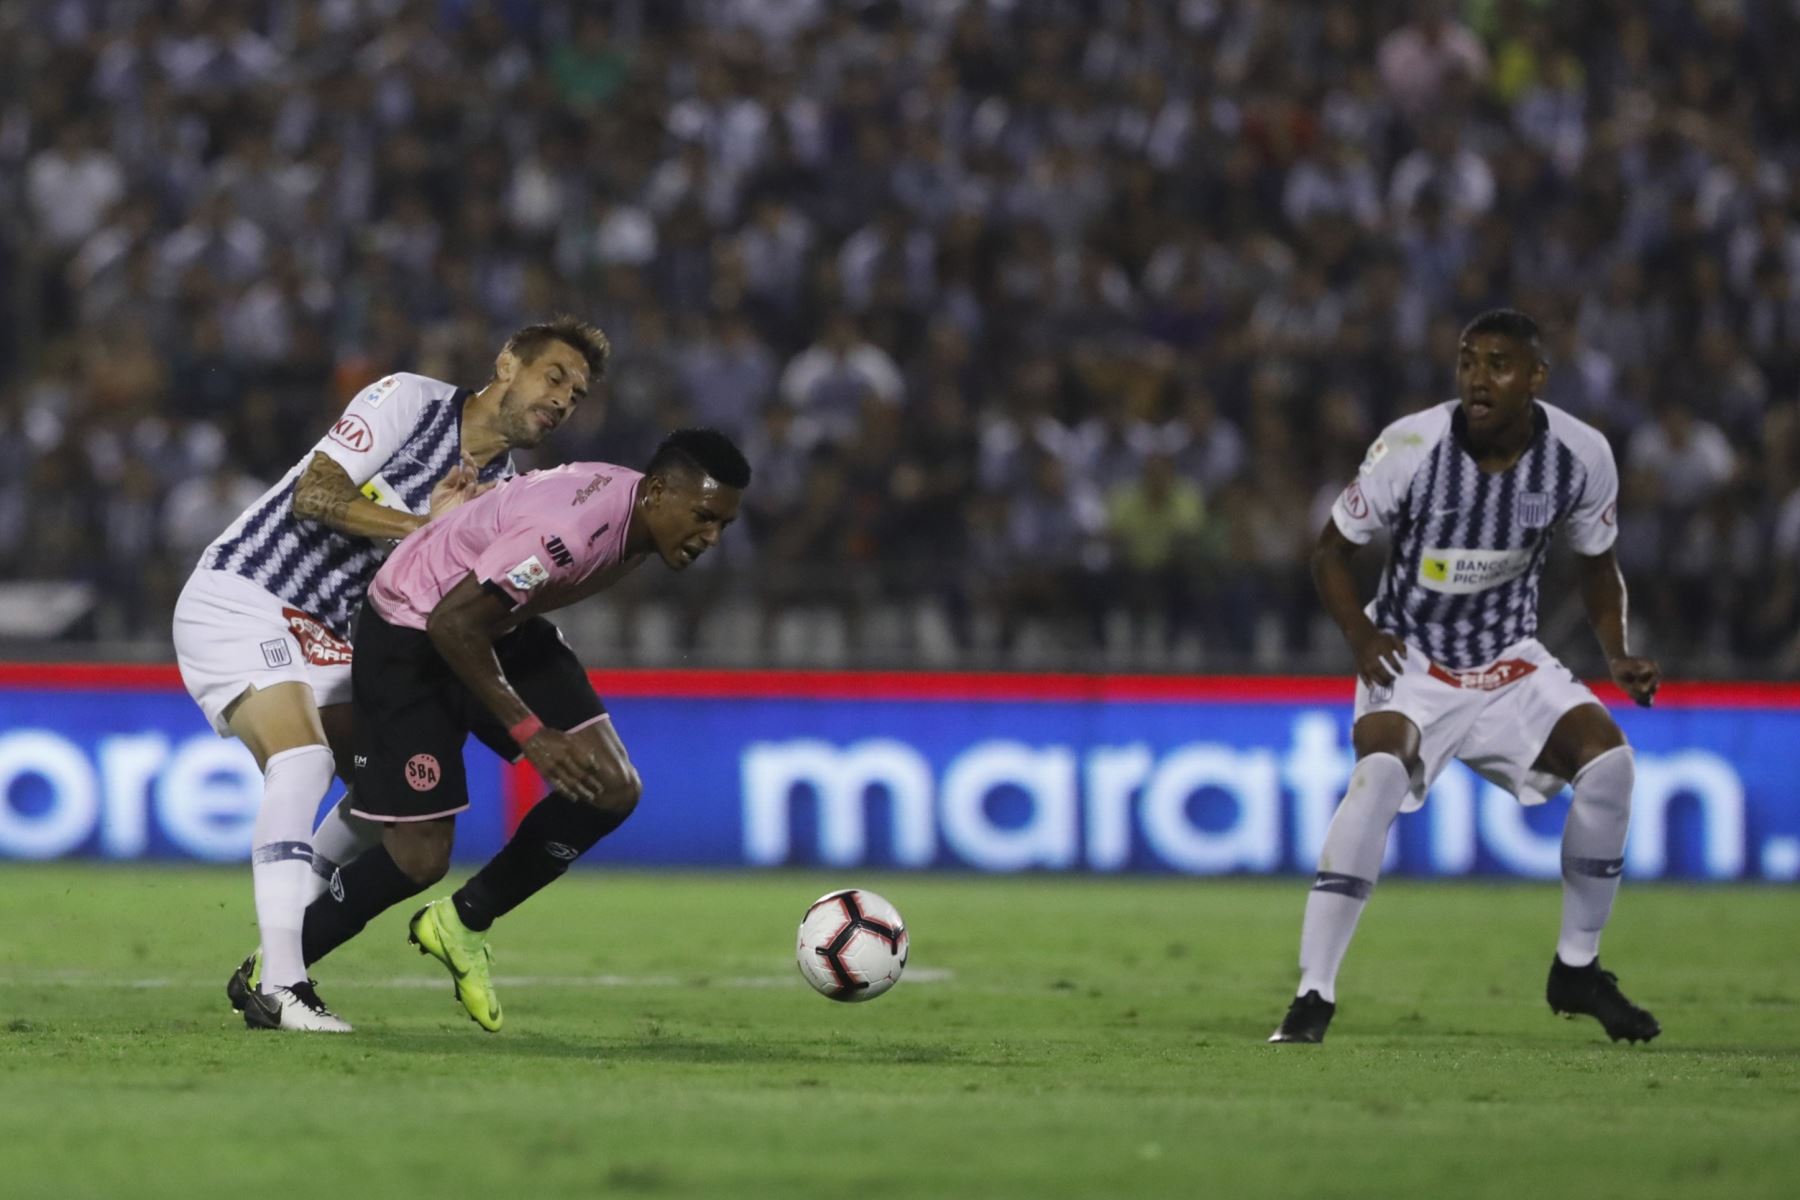 Alianza Lima, en el día de su aniversario, ganò 3-0 al Sport Boys del Callao en el inicio de la denominada Liga 1 del fútbol peruano.Foto: ANDINA/Internet